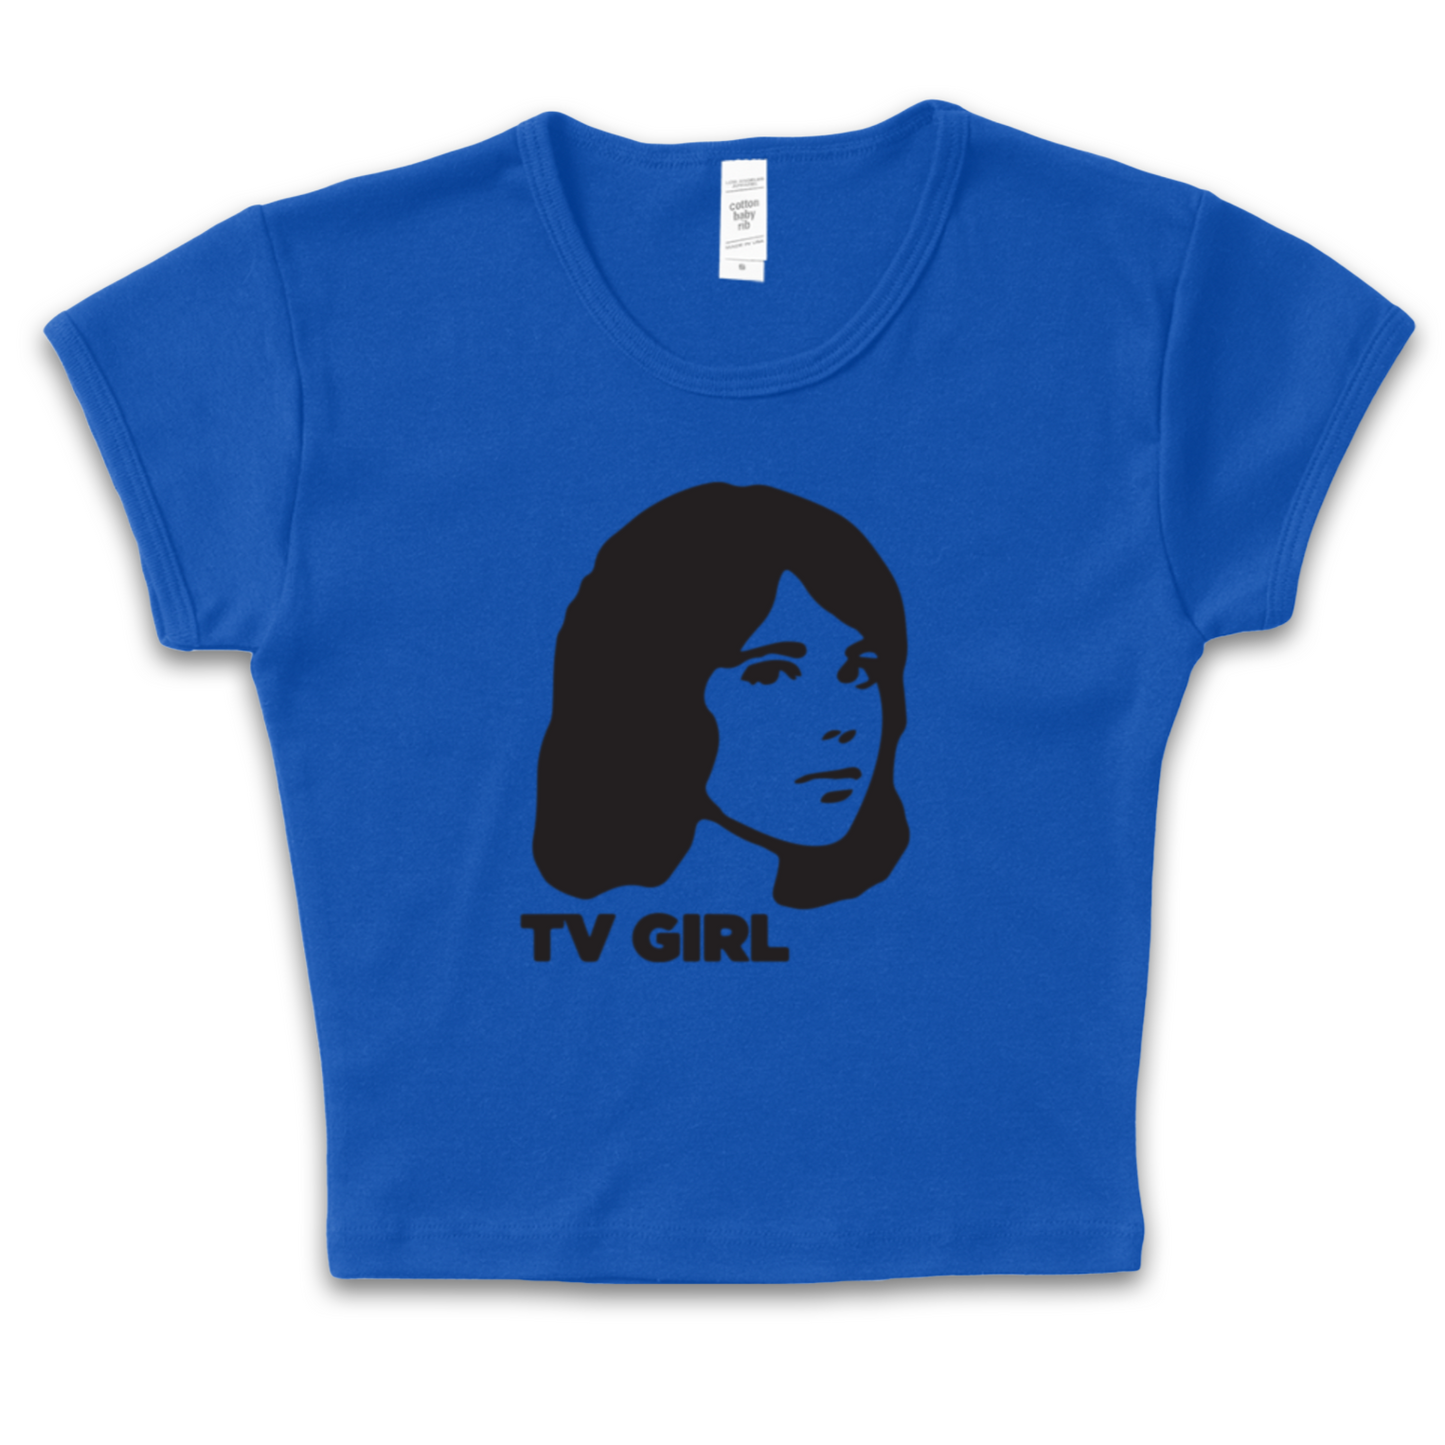 TV Girl Baby Tee